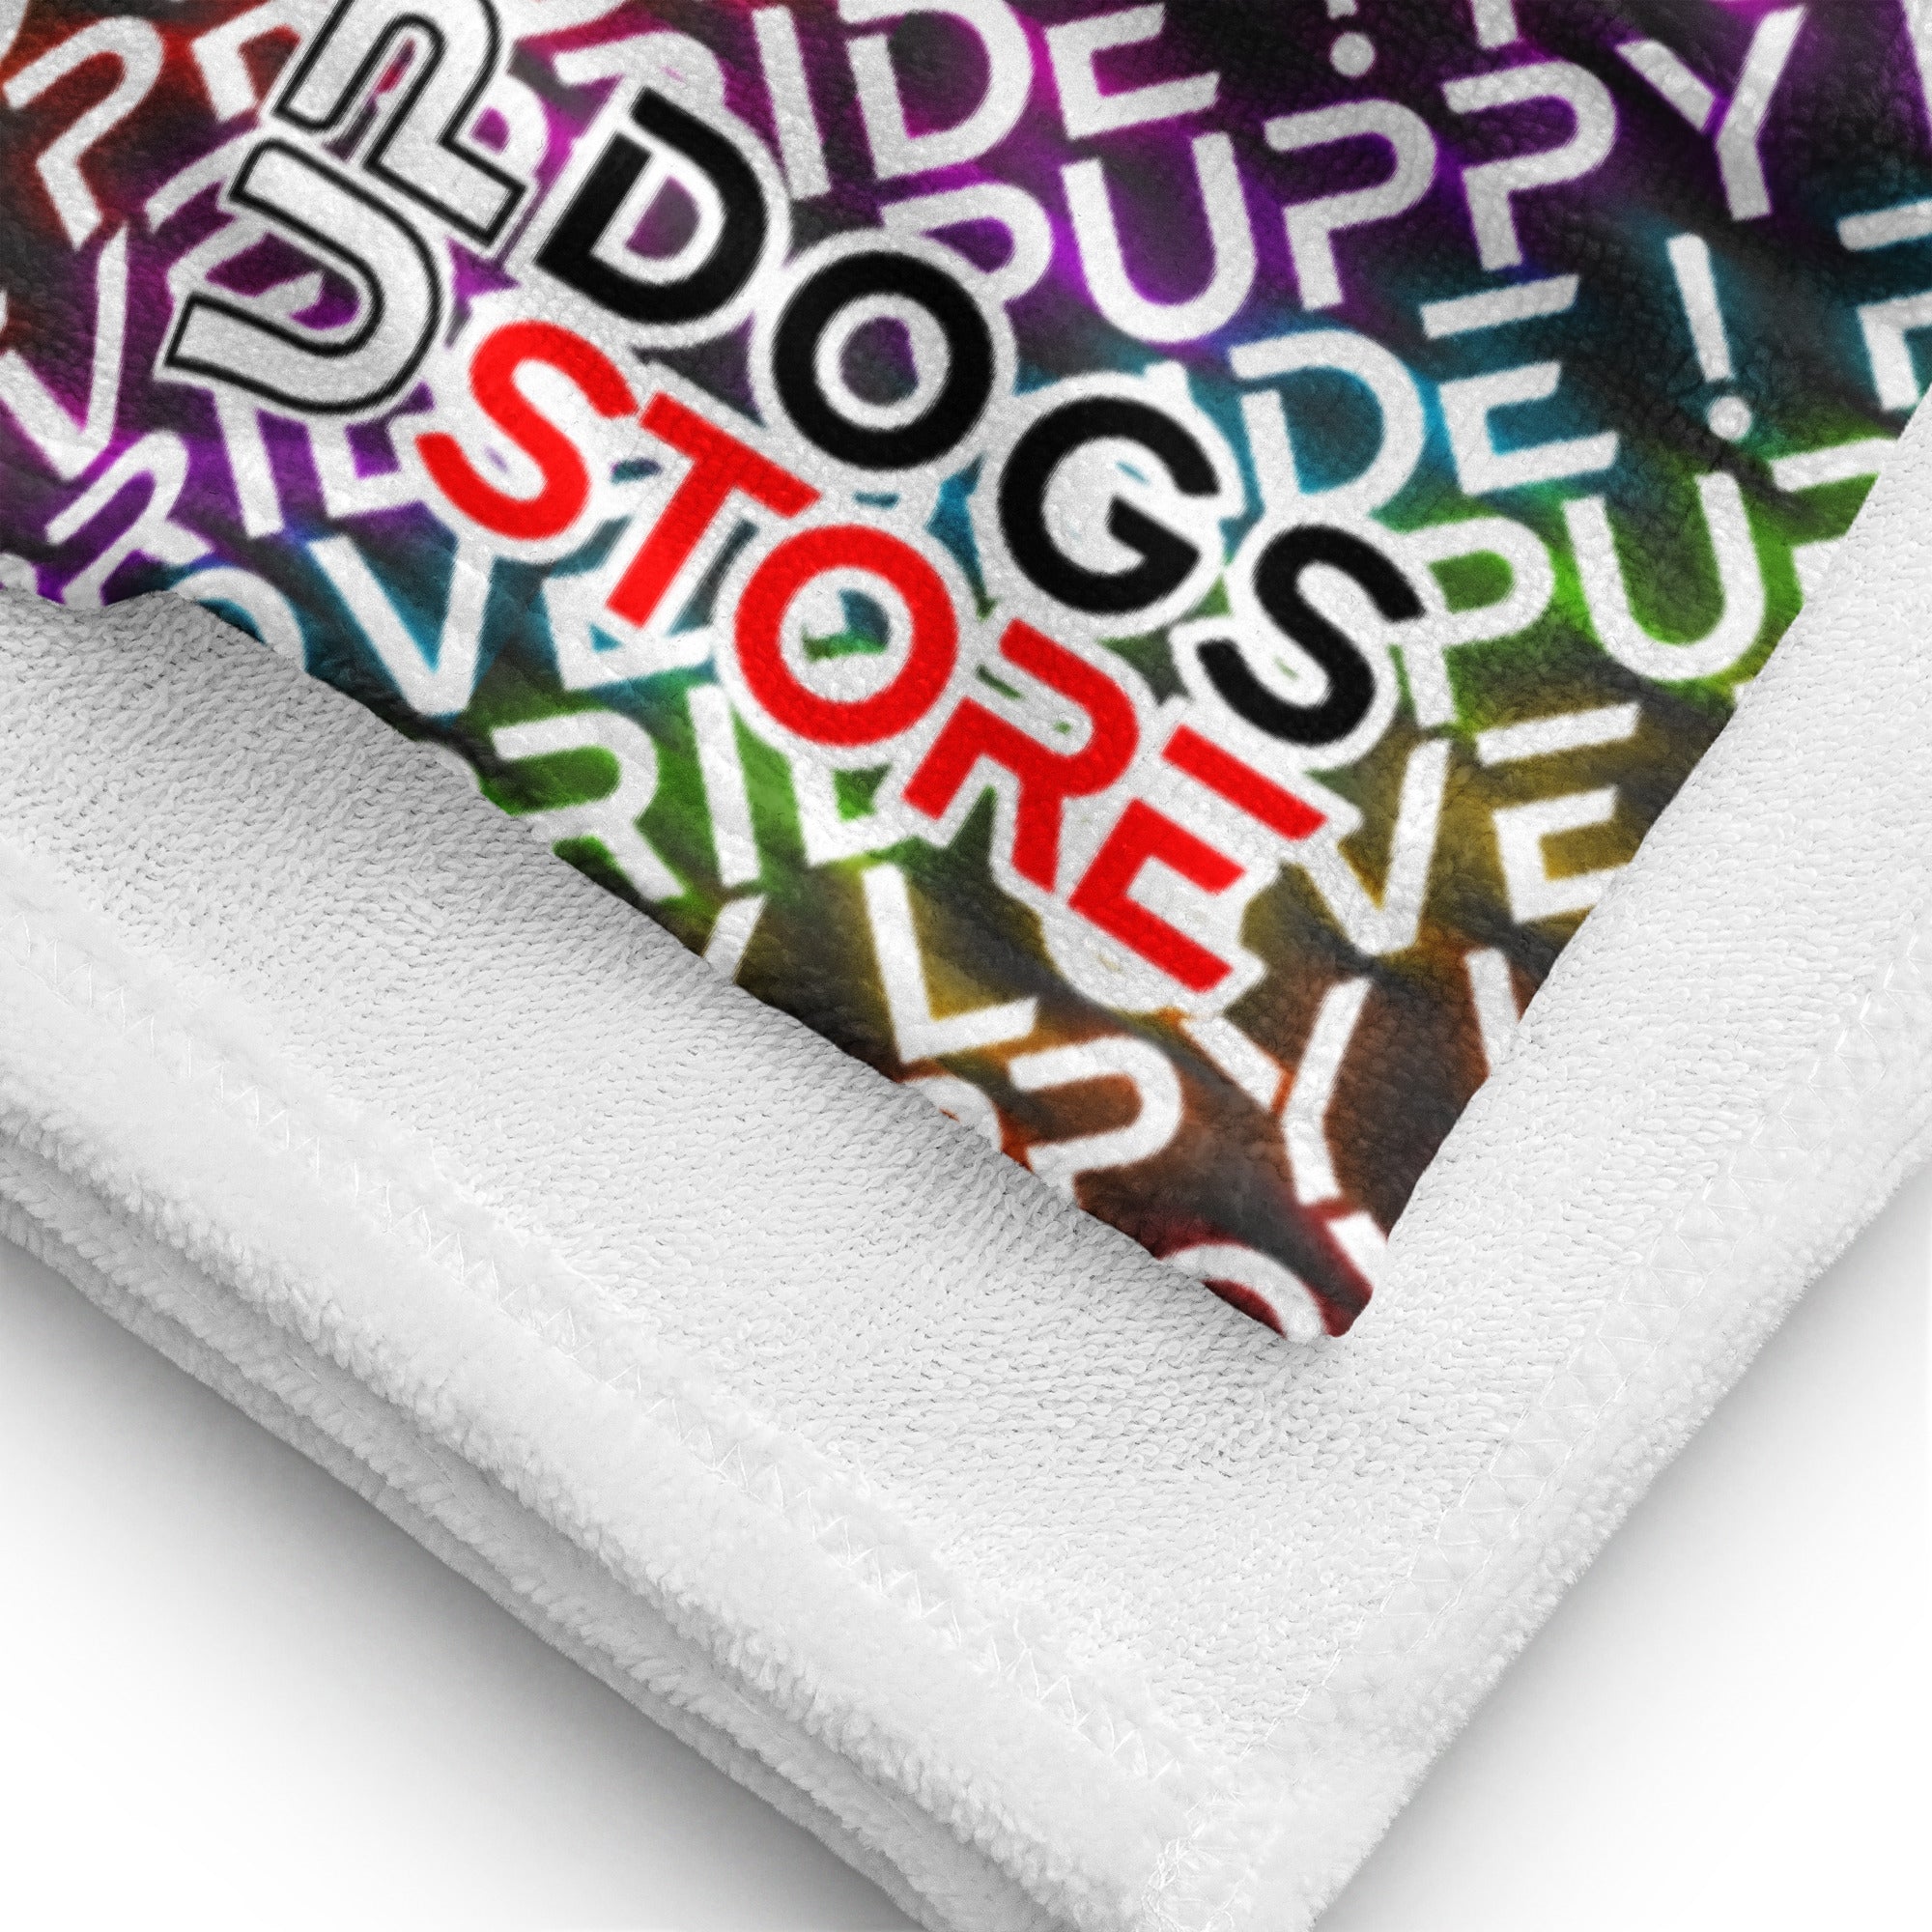 Puppy Love Pride / Bath Towel